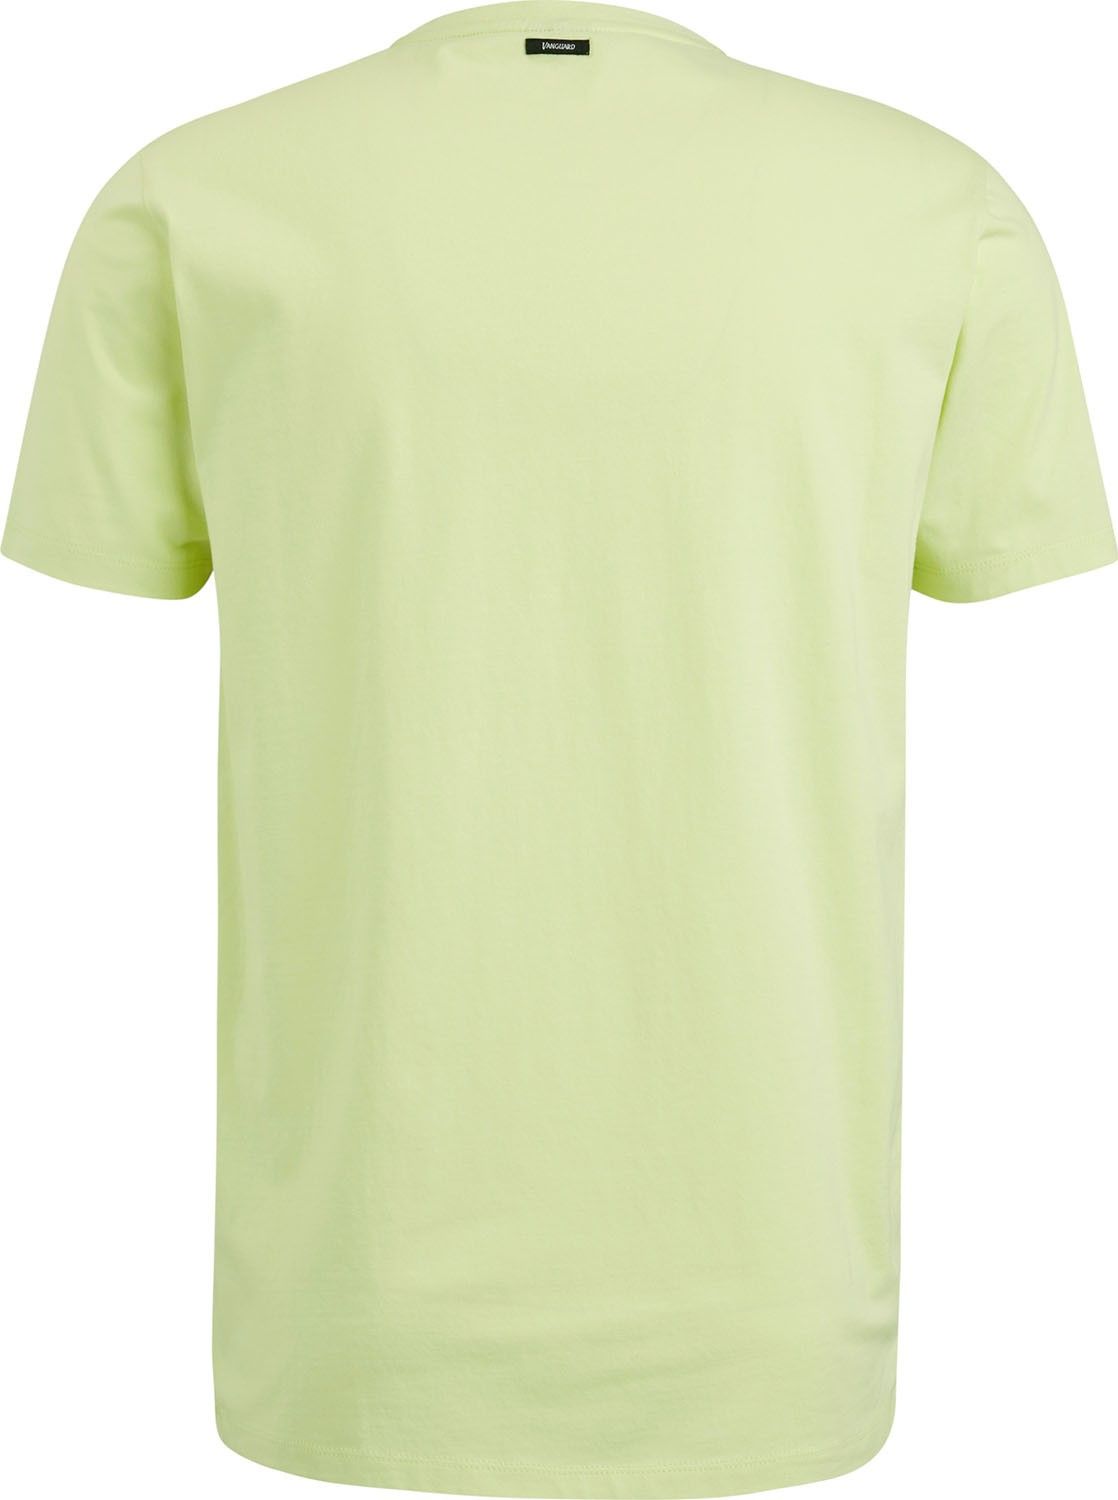 Vanguard T-Shirt Geel